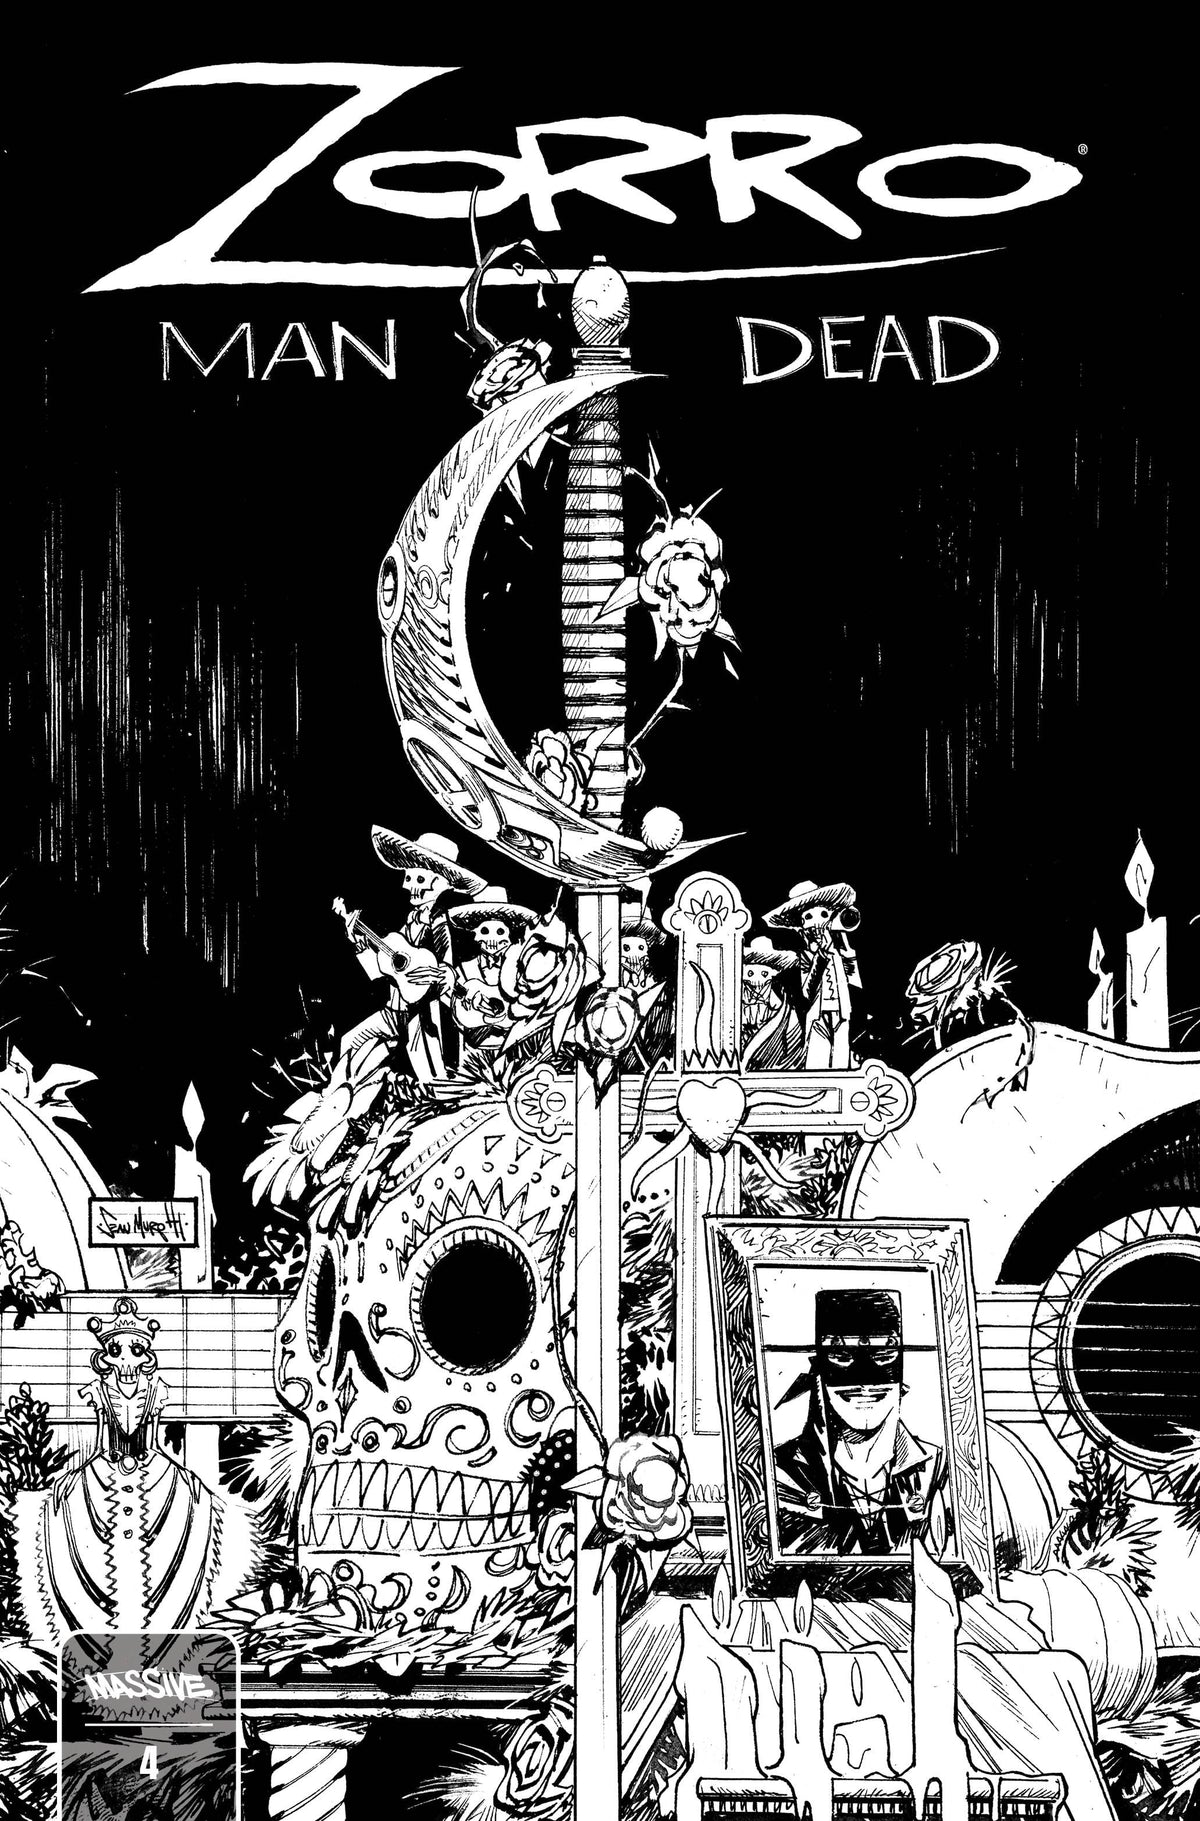 ZORRO MAN OF THE DEAD #4 (OF 4) CVR B BENITEZ (MR)